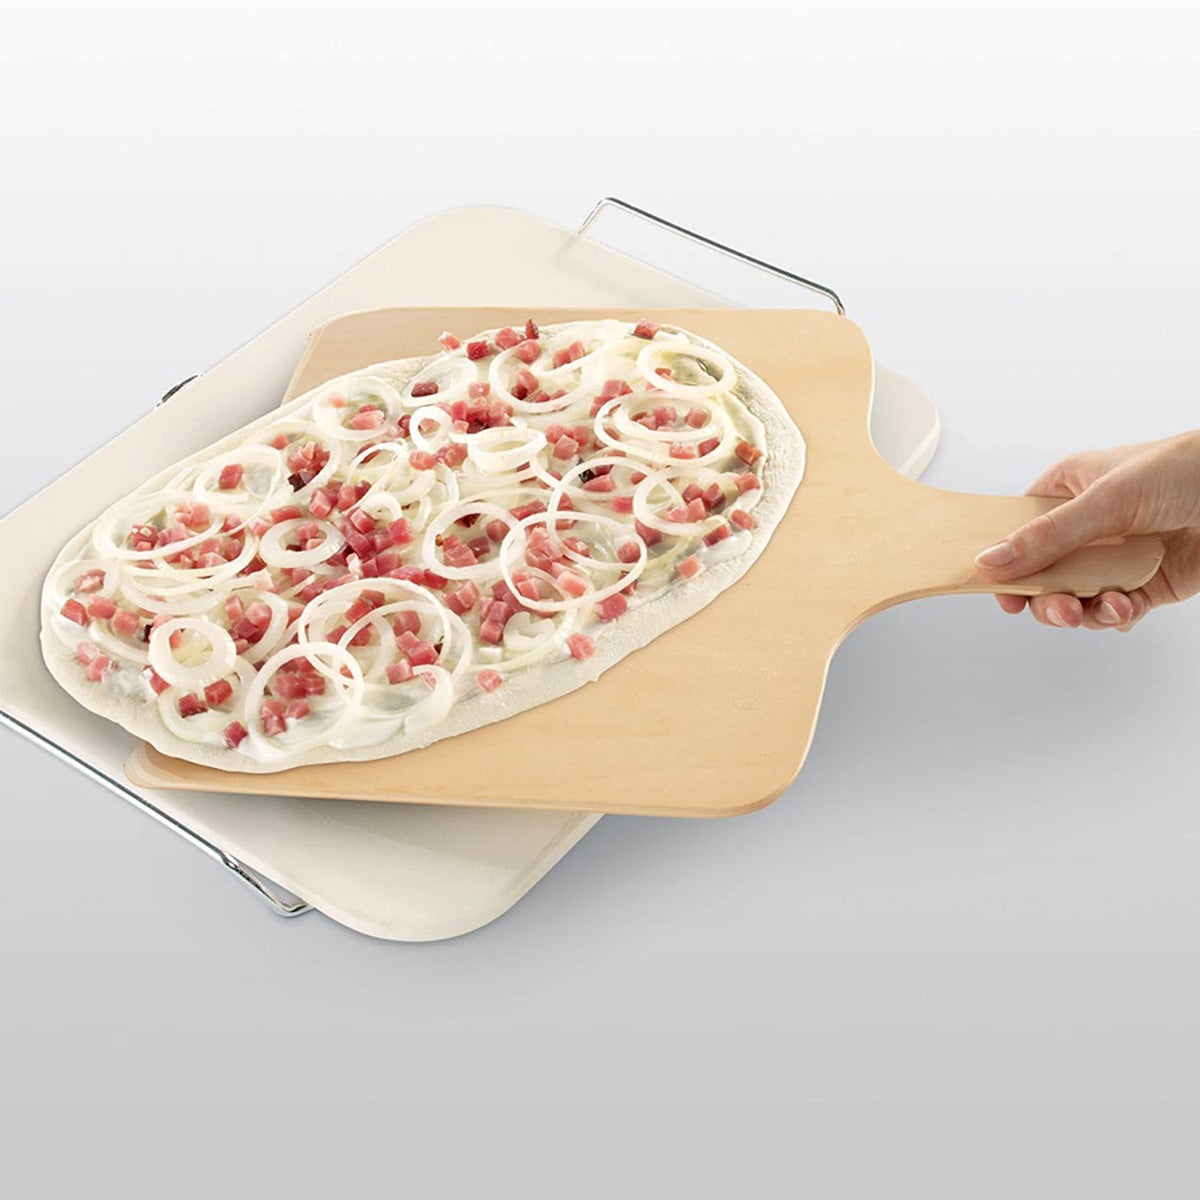 Leifheit Pizzastein mit Holzschieber eckig Keramik 38x33 cm für Flammkuchen und Pizza